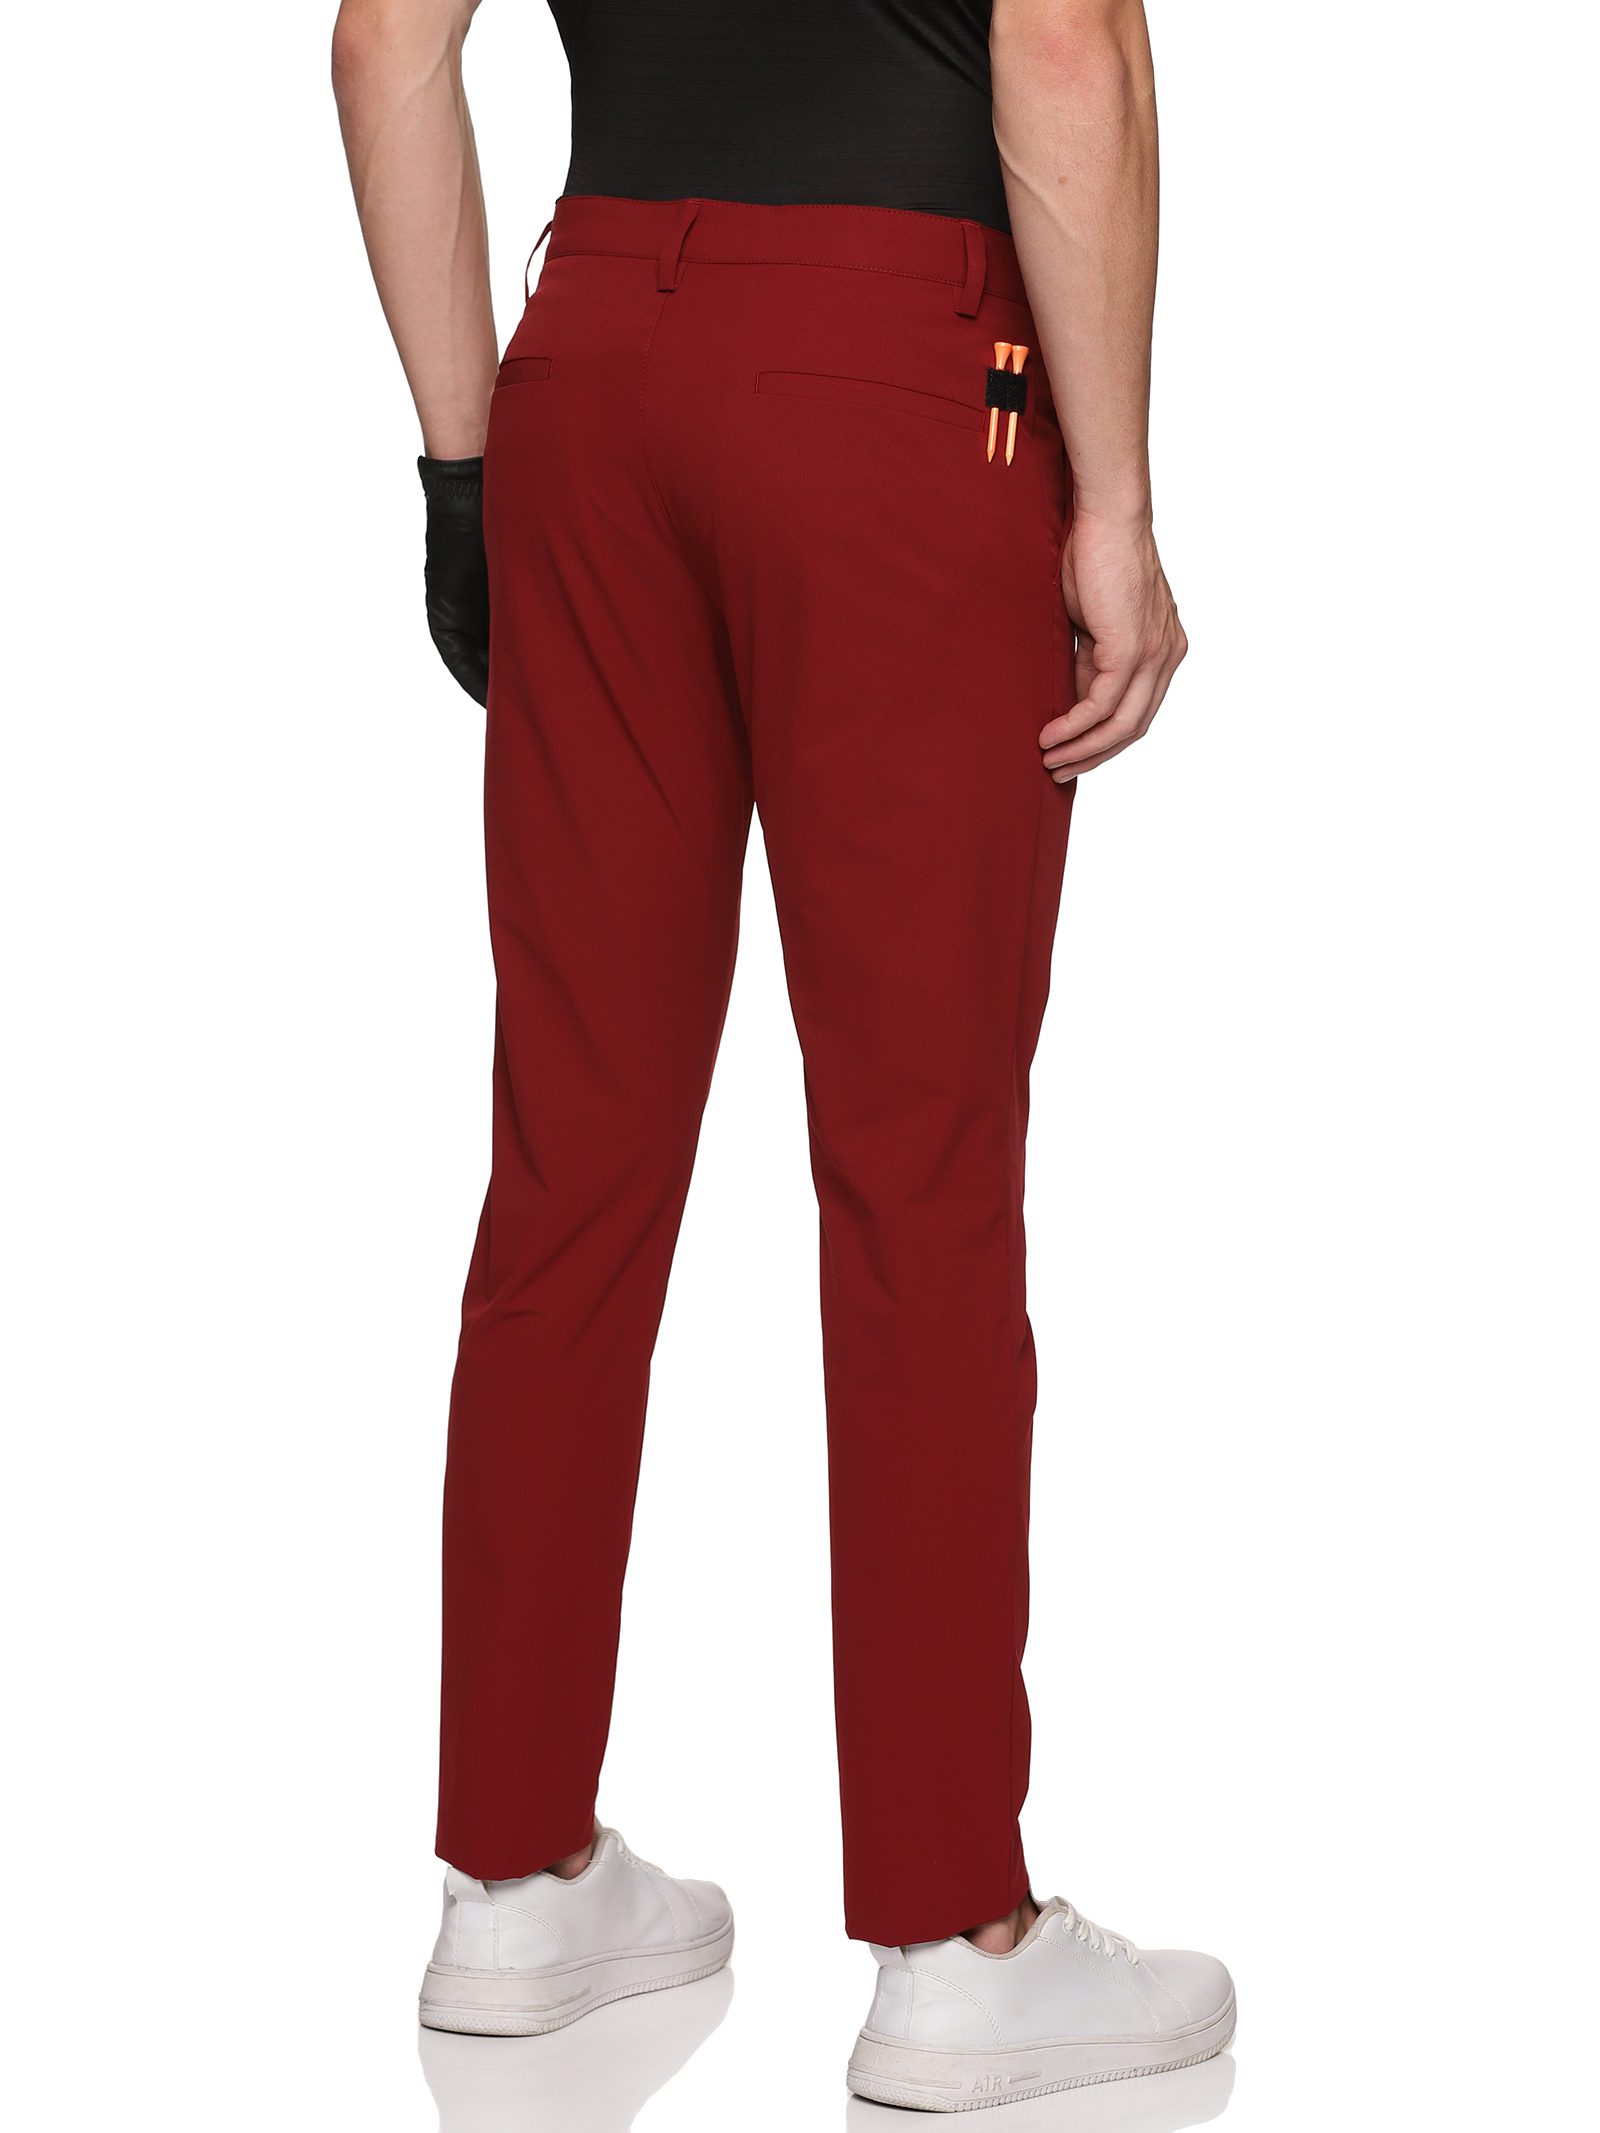 Men's Flexi-Waist Neo Golf Trousers- Happy Red - styzen.in